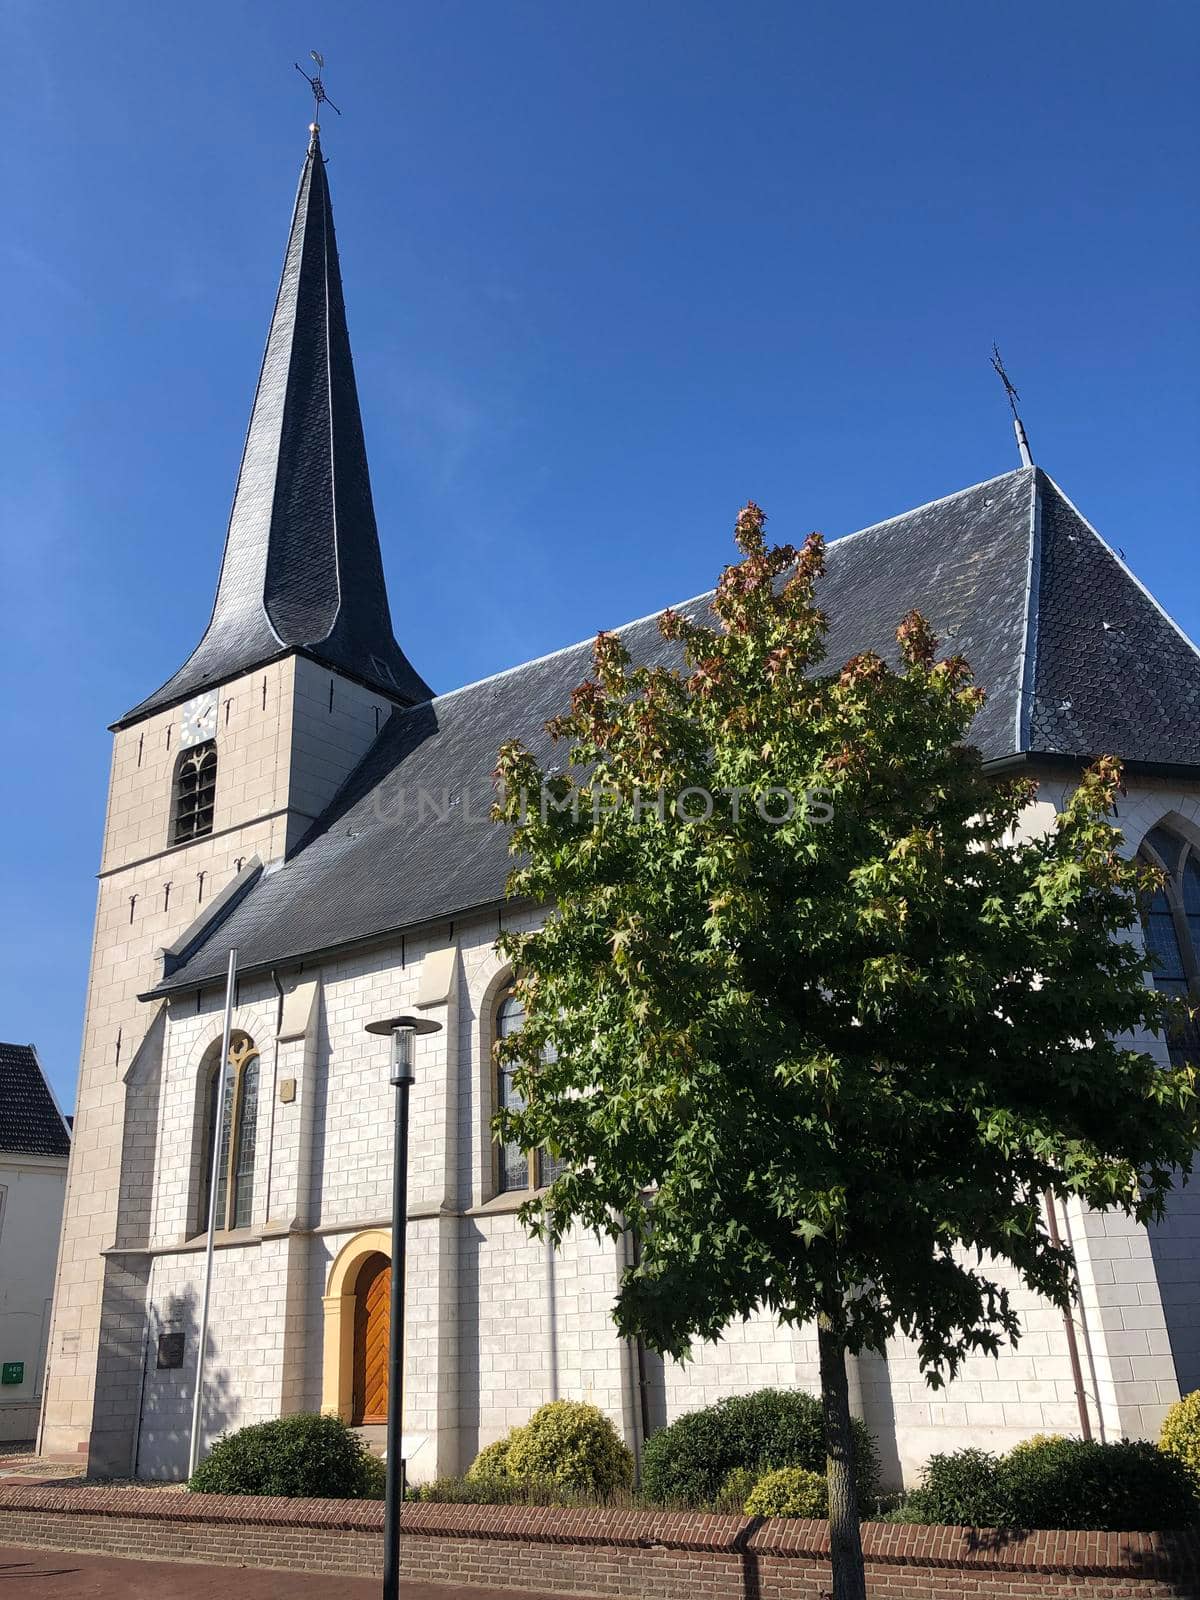 Johannes church in Lichtenvoorde by traveltelly